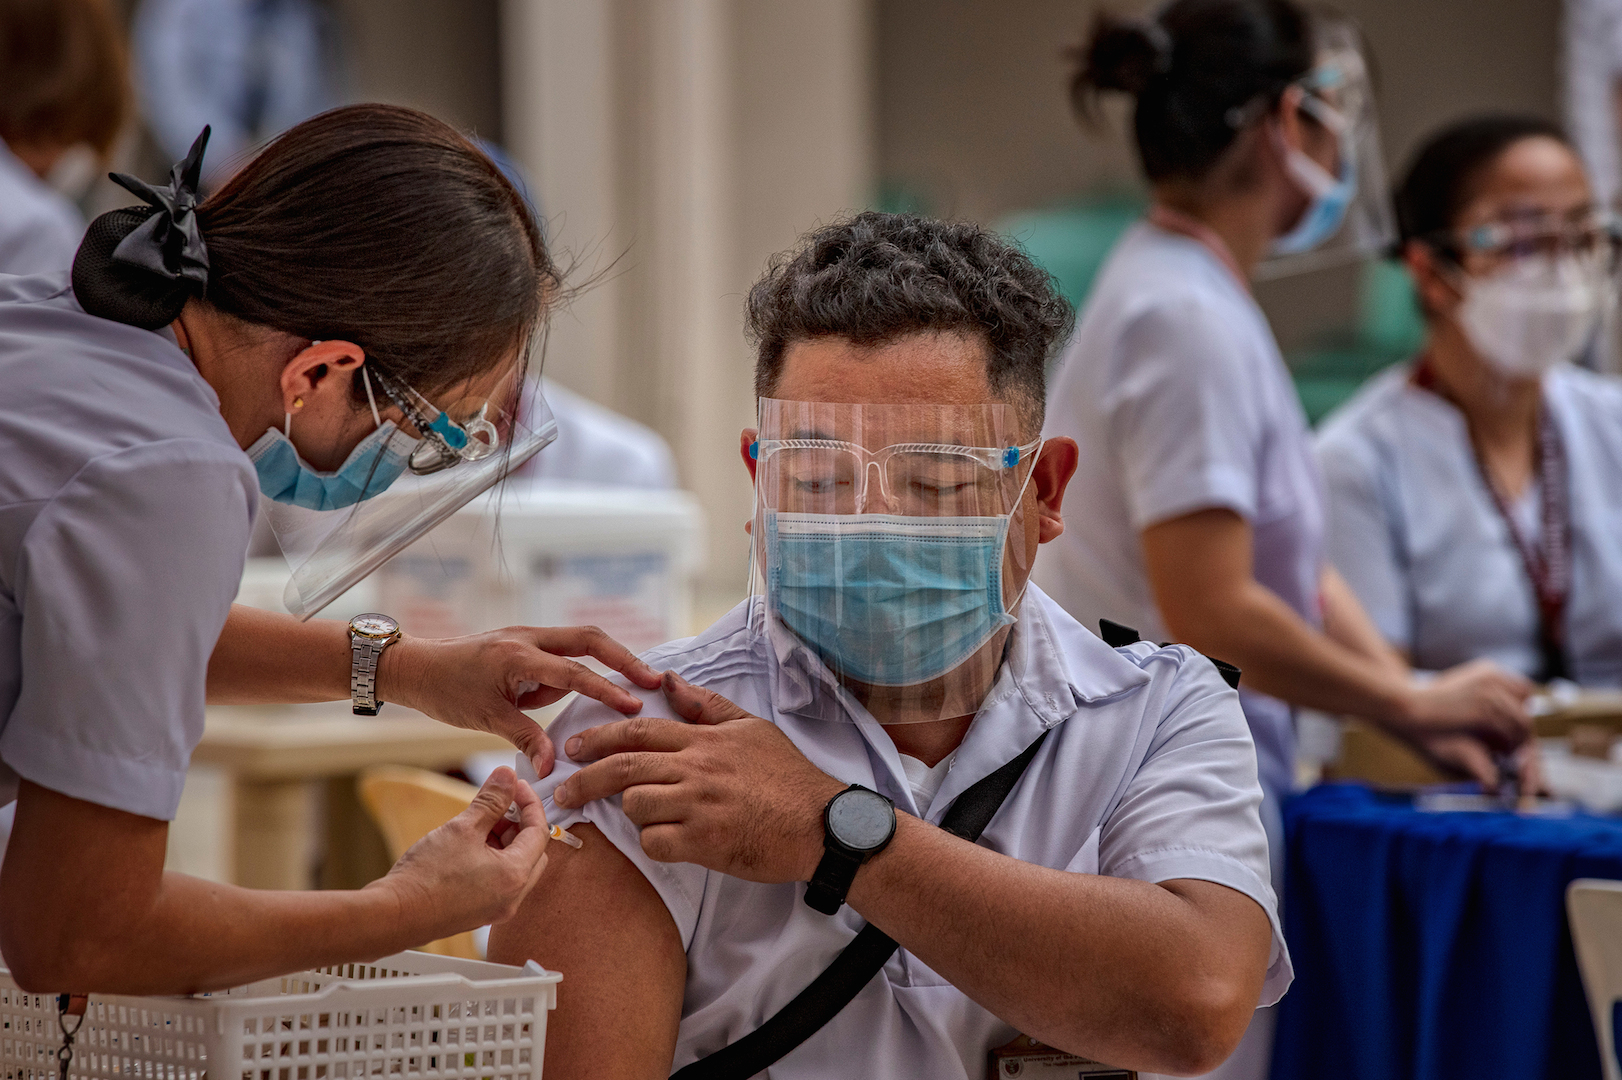 La proportion de personnes vaccinées reste encore en dessous de 10 % de la population aux Philippines, de même qu'en Inde, au Pakistan et en Indonésie. (Source : NPR)